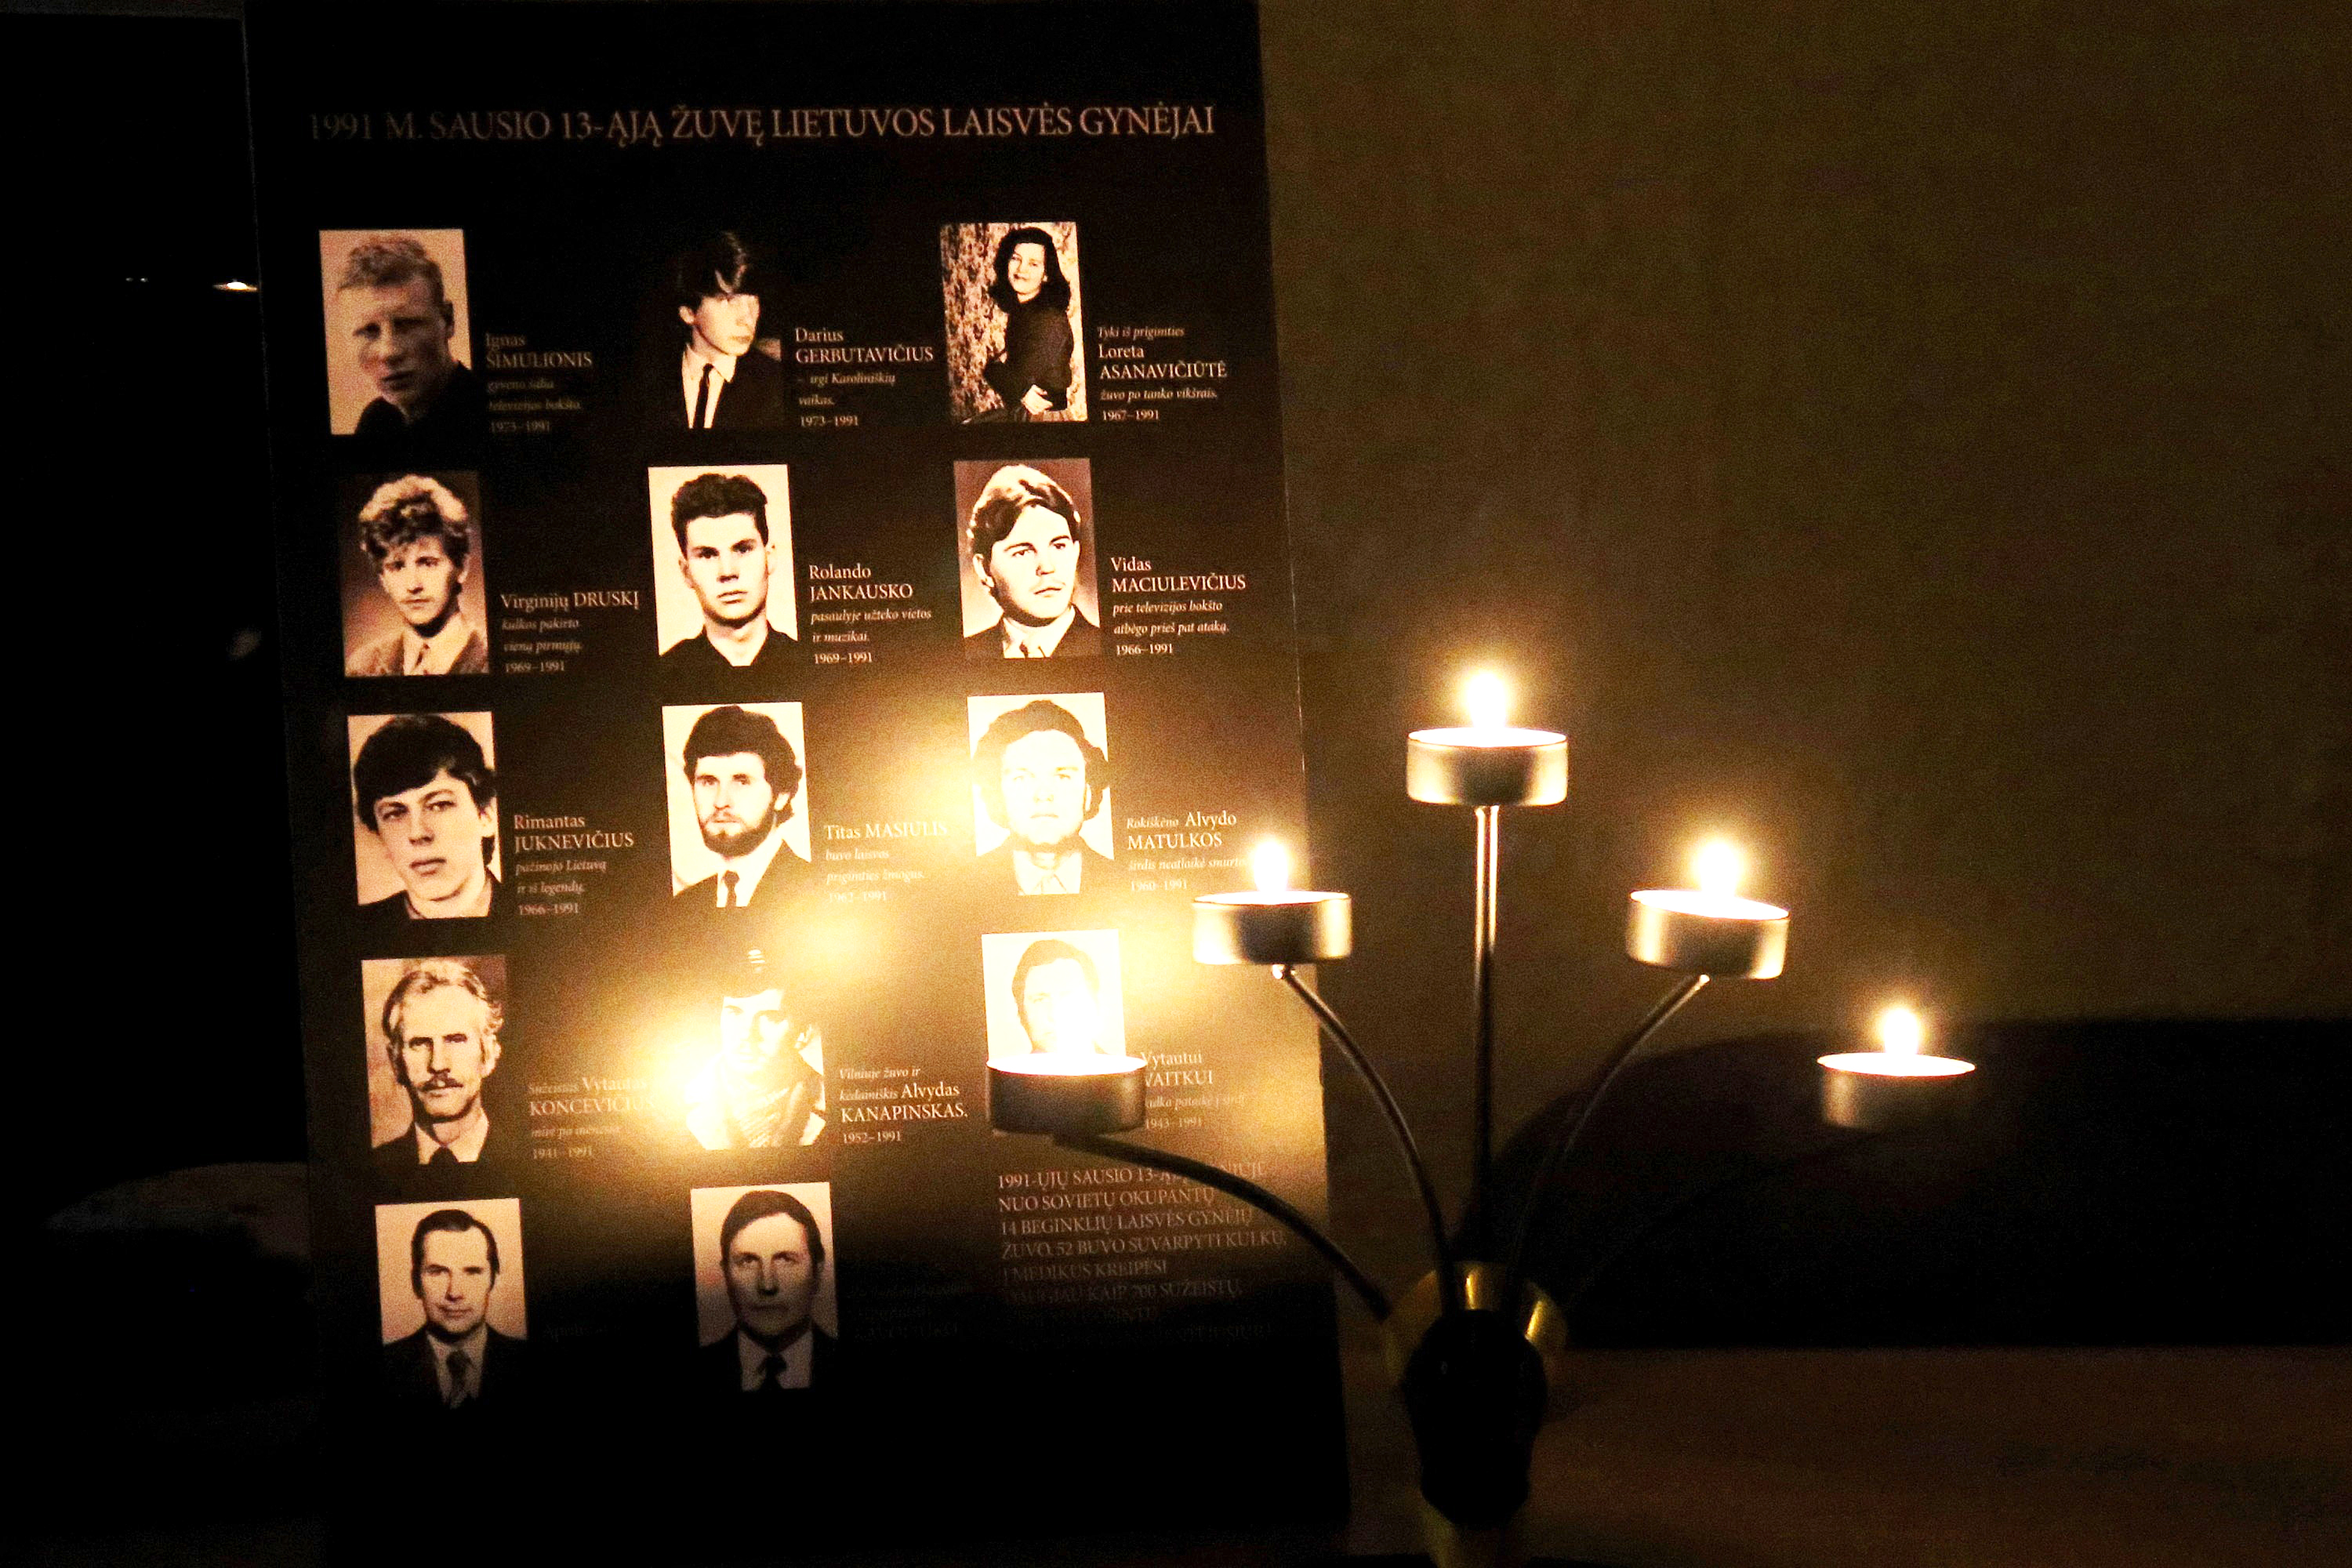 Любая публичная попытка заявить в Литве о том, что официальная версия гибели «жертв кровавого января» не соответствует действительности, будет расценена как преступление против государства